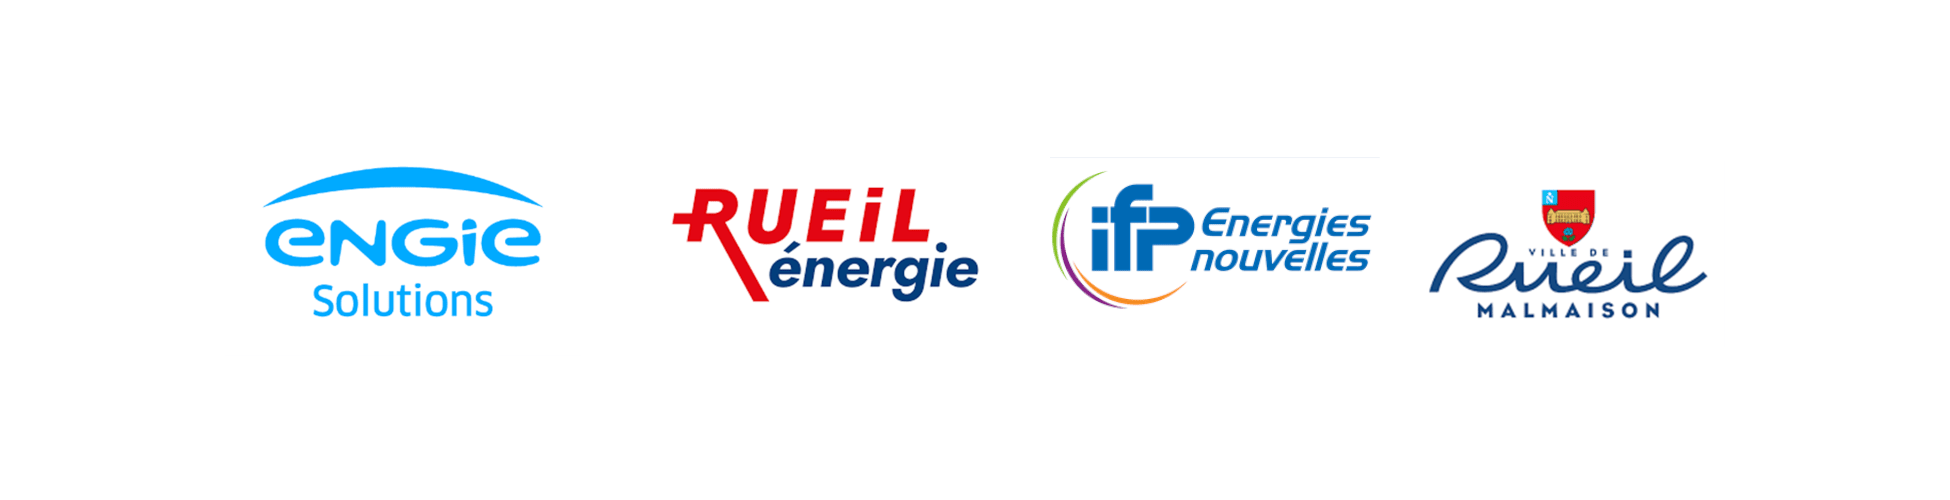 Image avec les 4 logos des partenaires du réseau de chaleur : Engie, Rueil Energie, IFPEN et Rueil-Malmaison